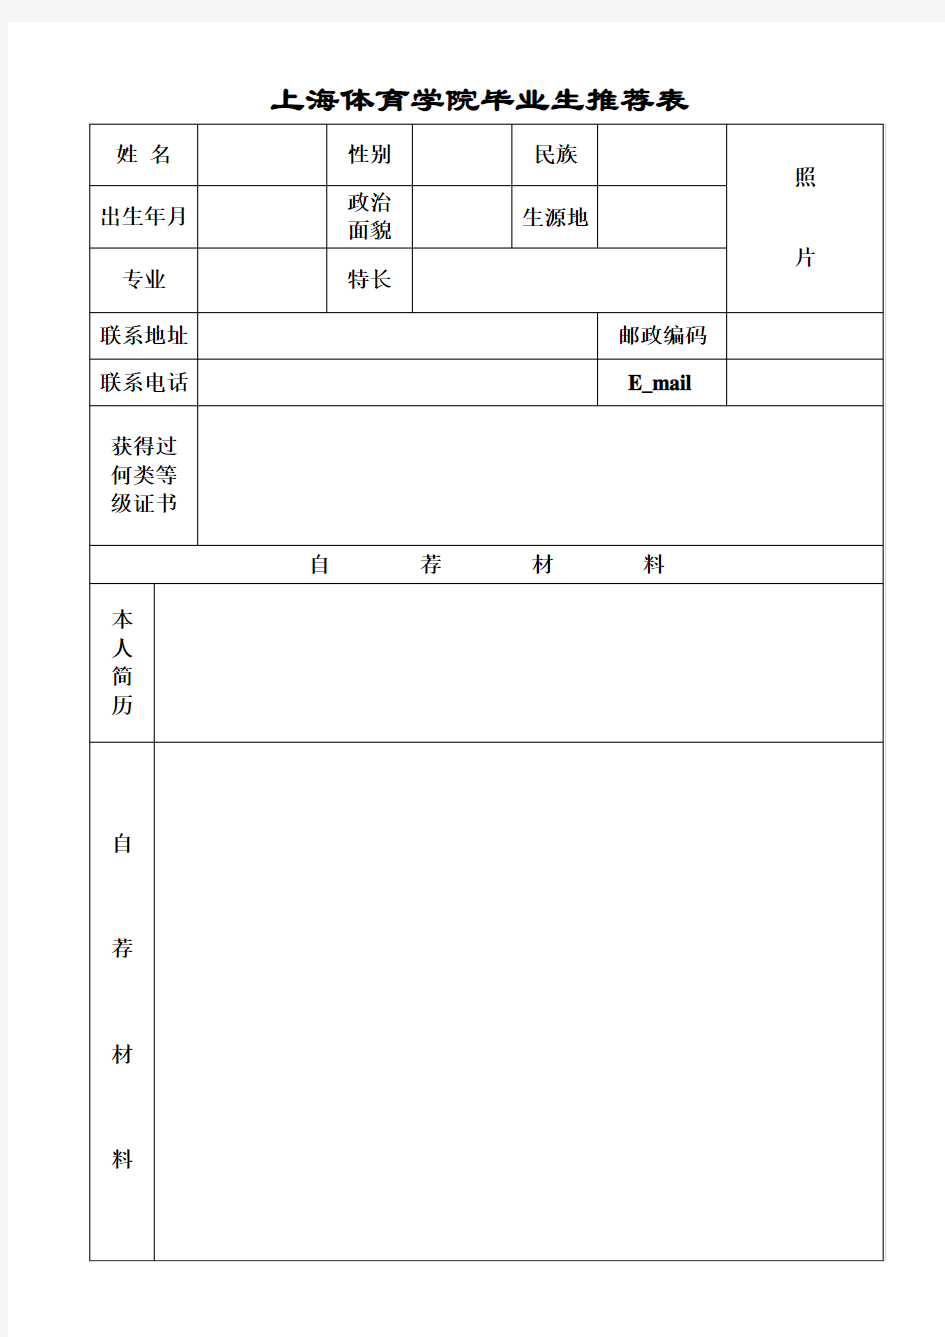 上海体育学院毕业生推荐表